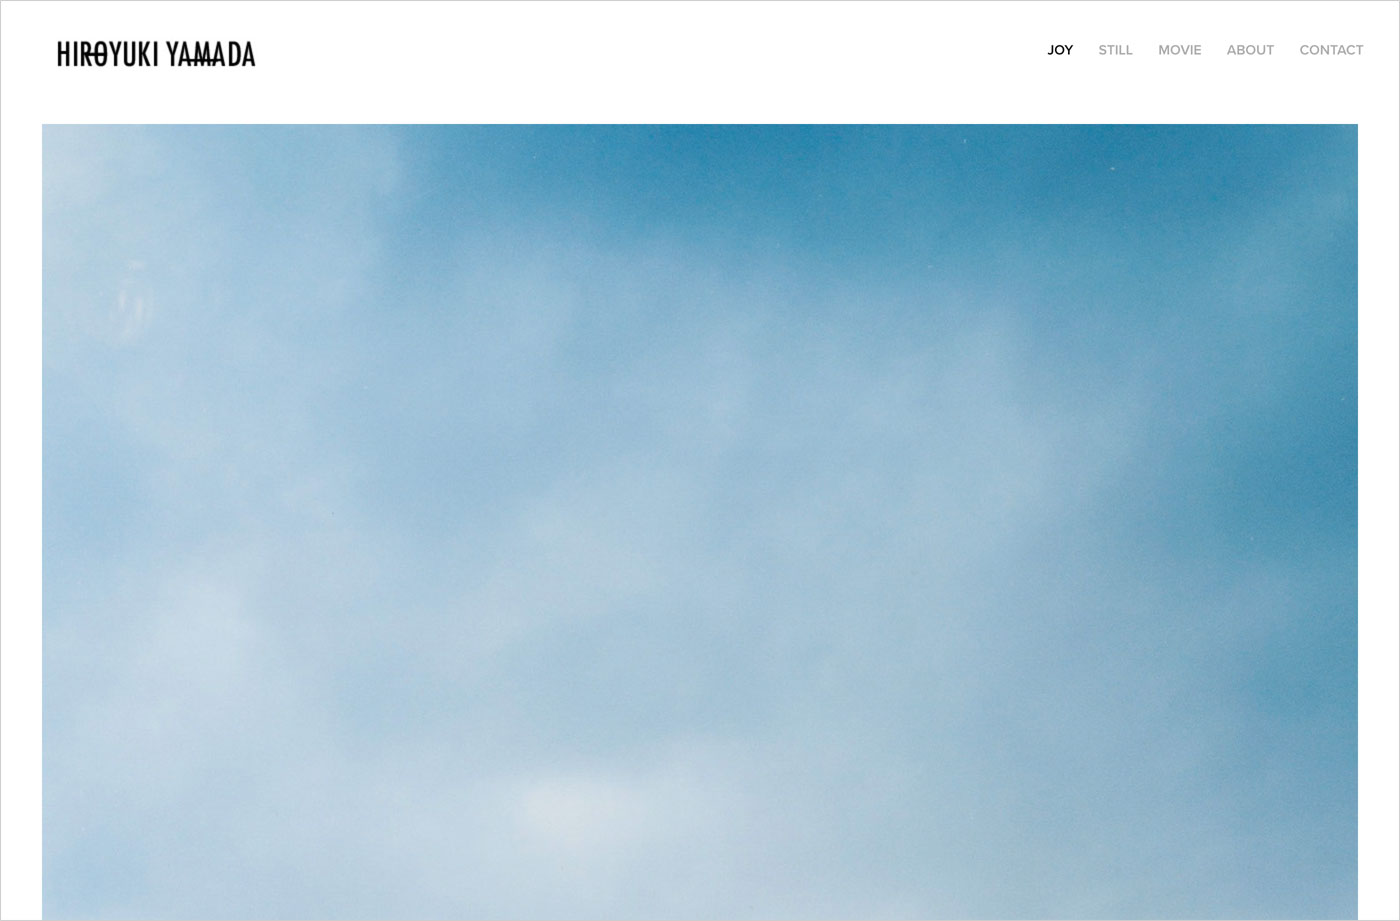 Hiroyuki Yamadaウェブサイトの画面キャプチャ画像